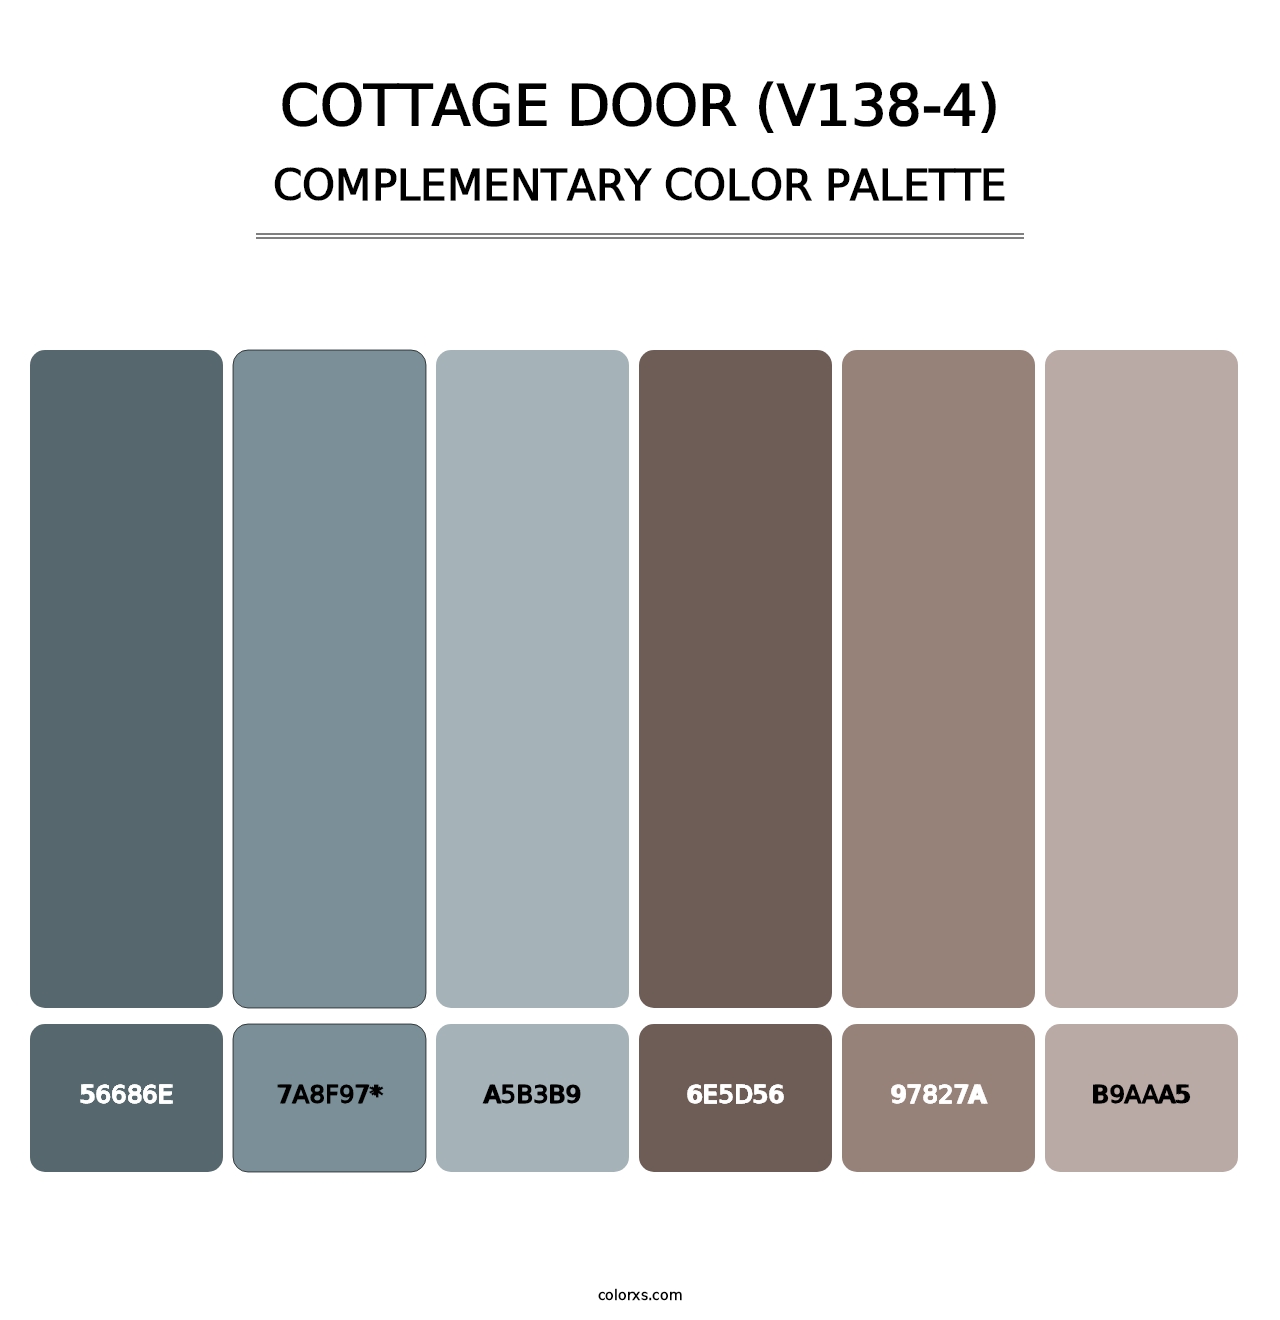 Cottage Door (V138-4) - Complementary Color Palette